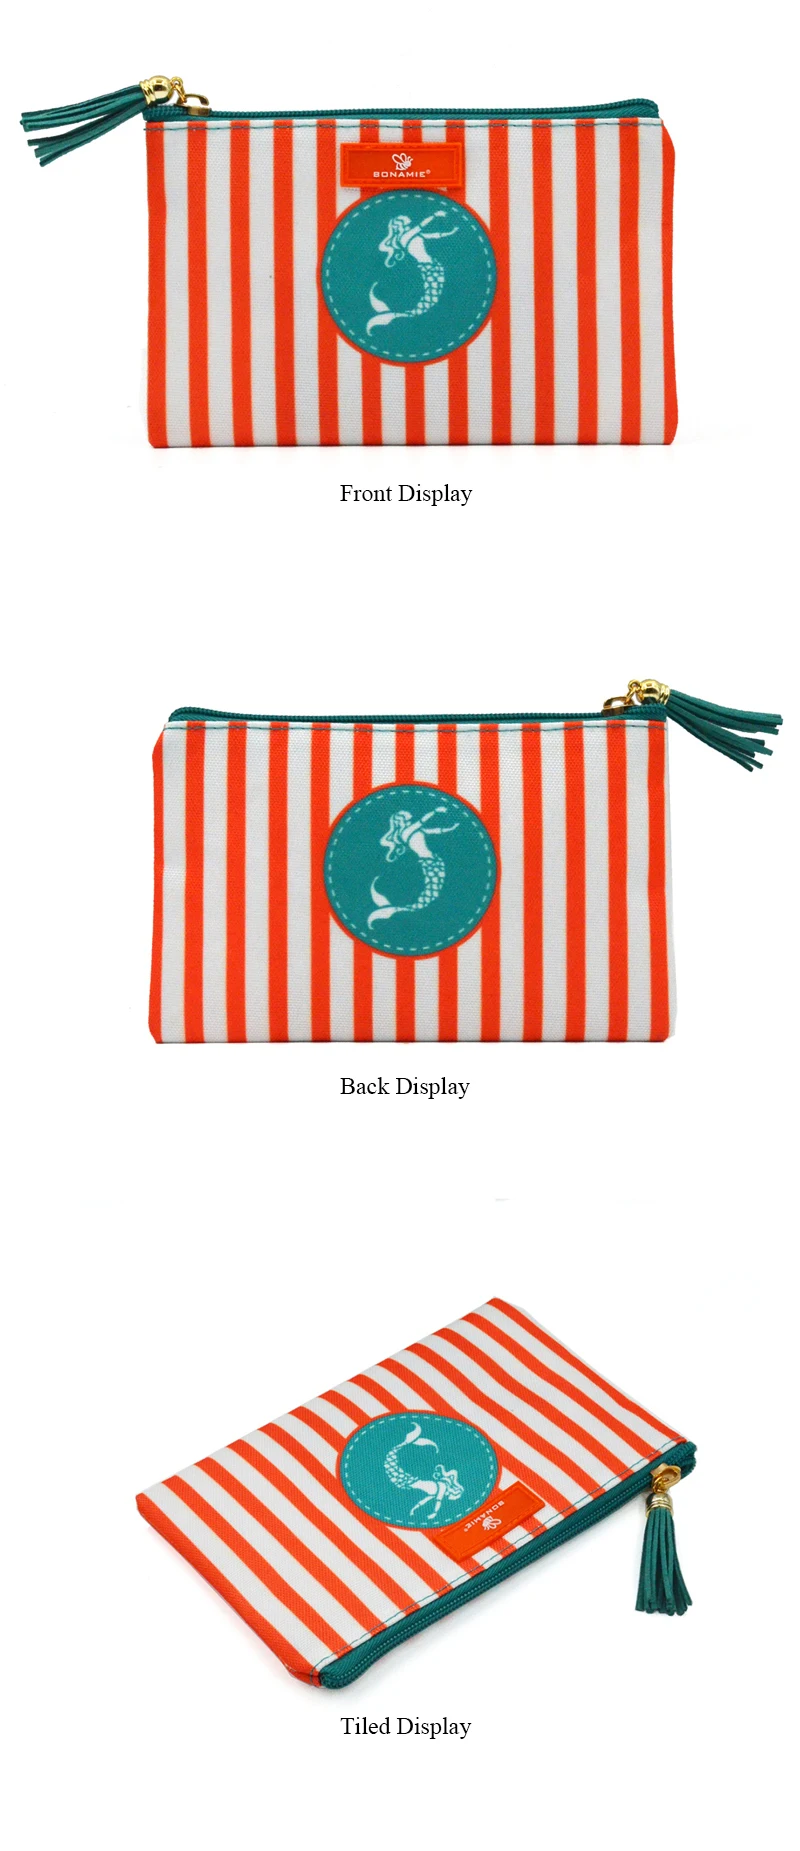 BONAMIE, Женский брендовый полосатый косметический Чехол, сумка для леди, клатч, сумка с принтом русалки, с кисточками, маленькая пляжная сумка, кошелек, сумочка для макияжа